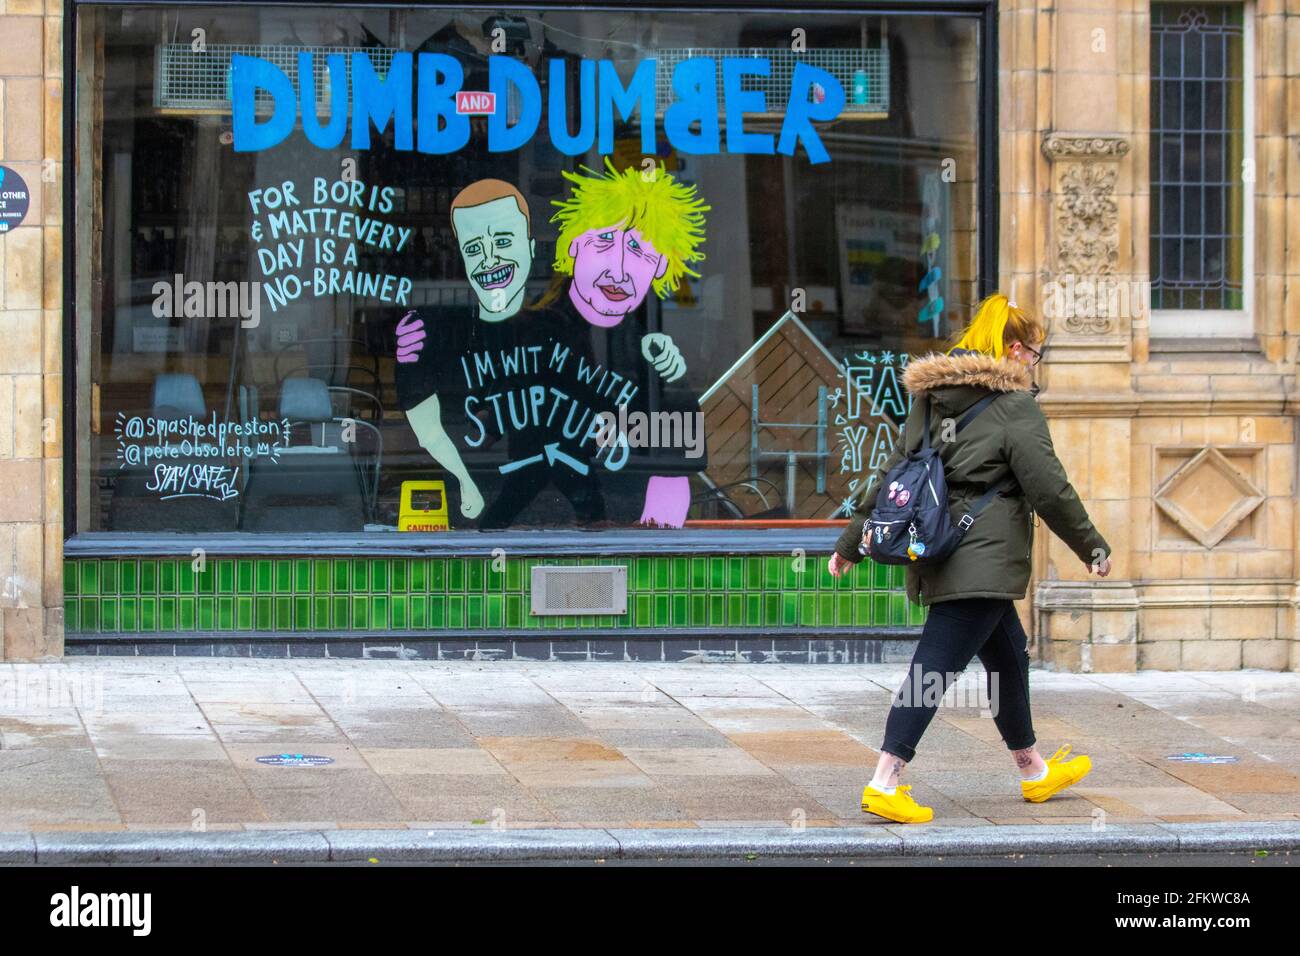 Boris Johnson Tory leader cartoon immagini in Preston; Lancashire. Maggio 2021; tempo britannico; giacche impermeabili e cappotti impermeabili di anoraks sono l'ordine del giorno in una fredda giornata bagnata e ventosa. Satira, fumetti, caricature, cartoni animati politici satirici, parodia nel centro della città. Foto Stock